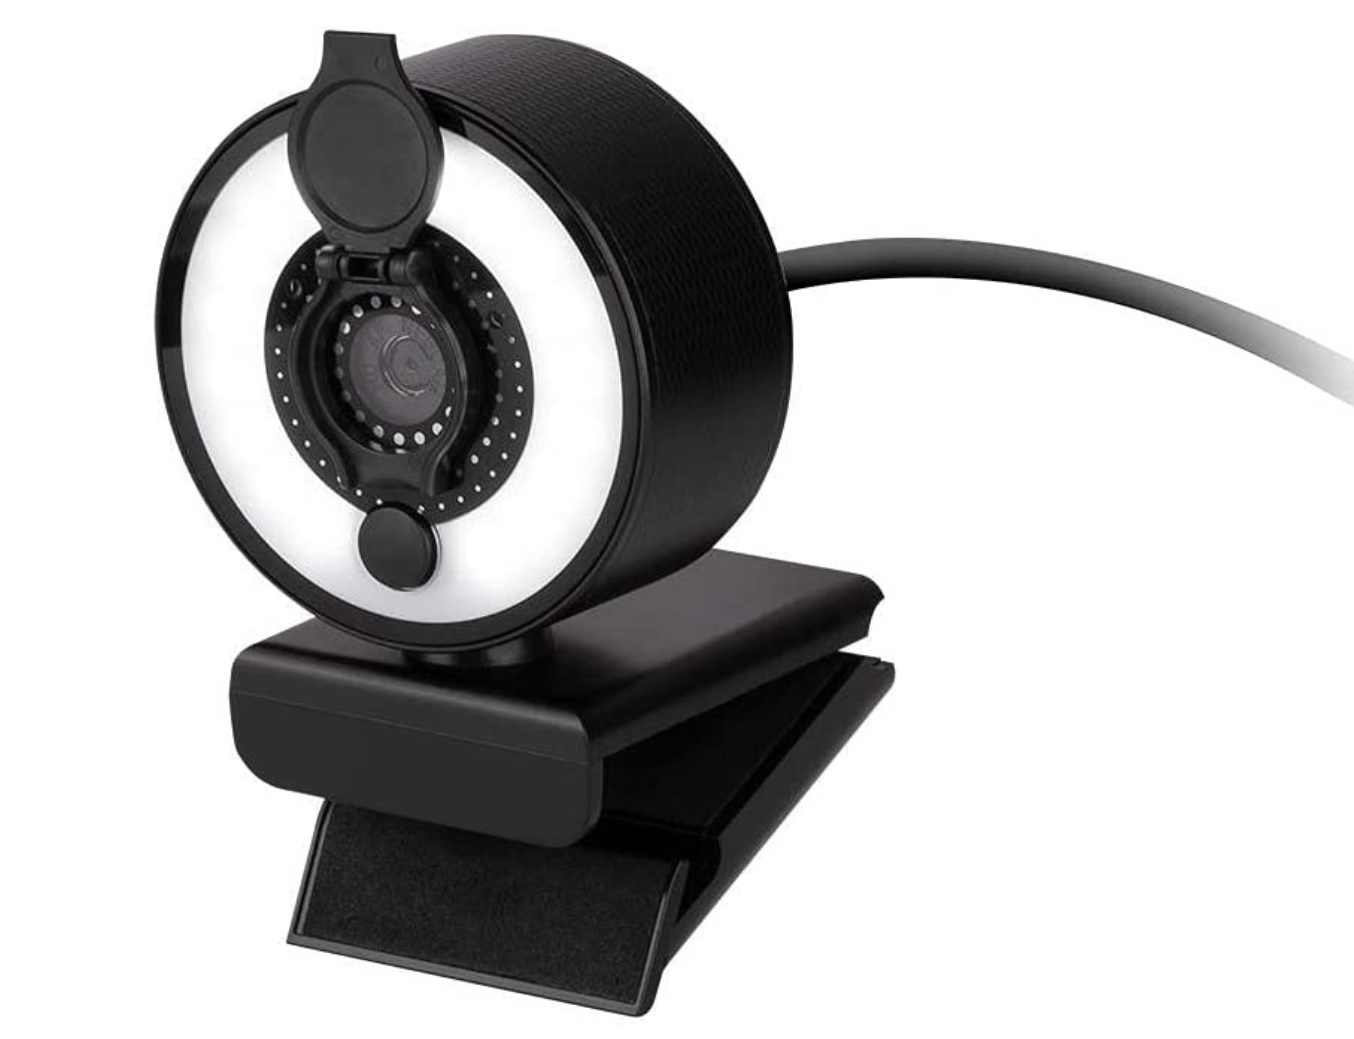 Веб-камера Monoprice 2K USB – найкраща бюджетна веб-камера, яка посіла друге місце